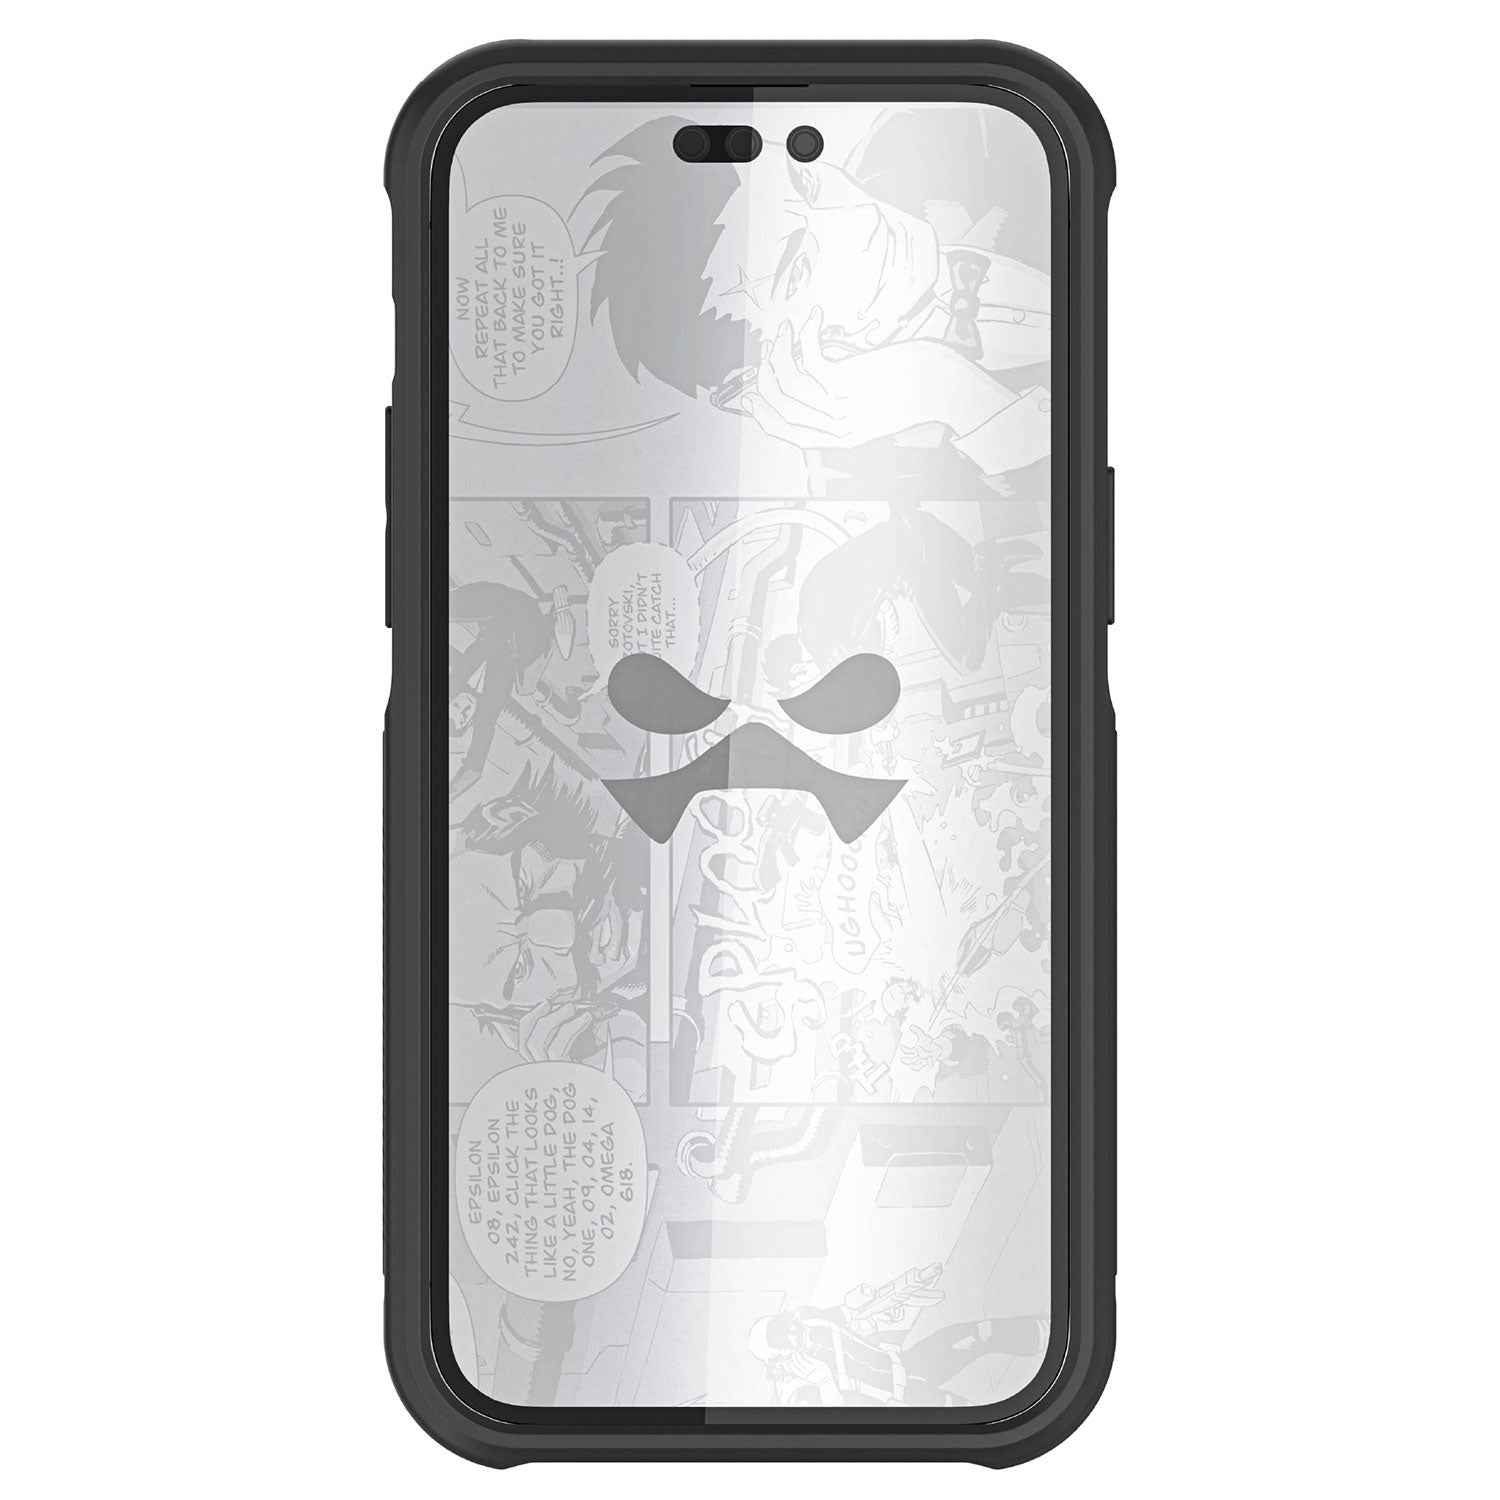 Ghostek iPhone 14 Pro Max Case Atomic Slim w/ Magsafe Black